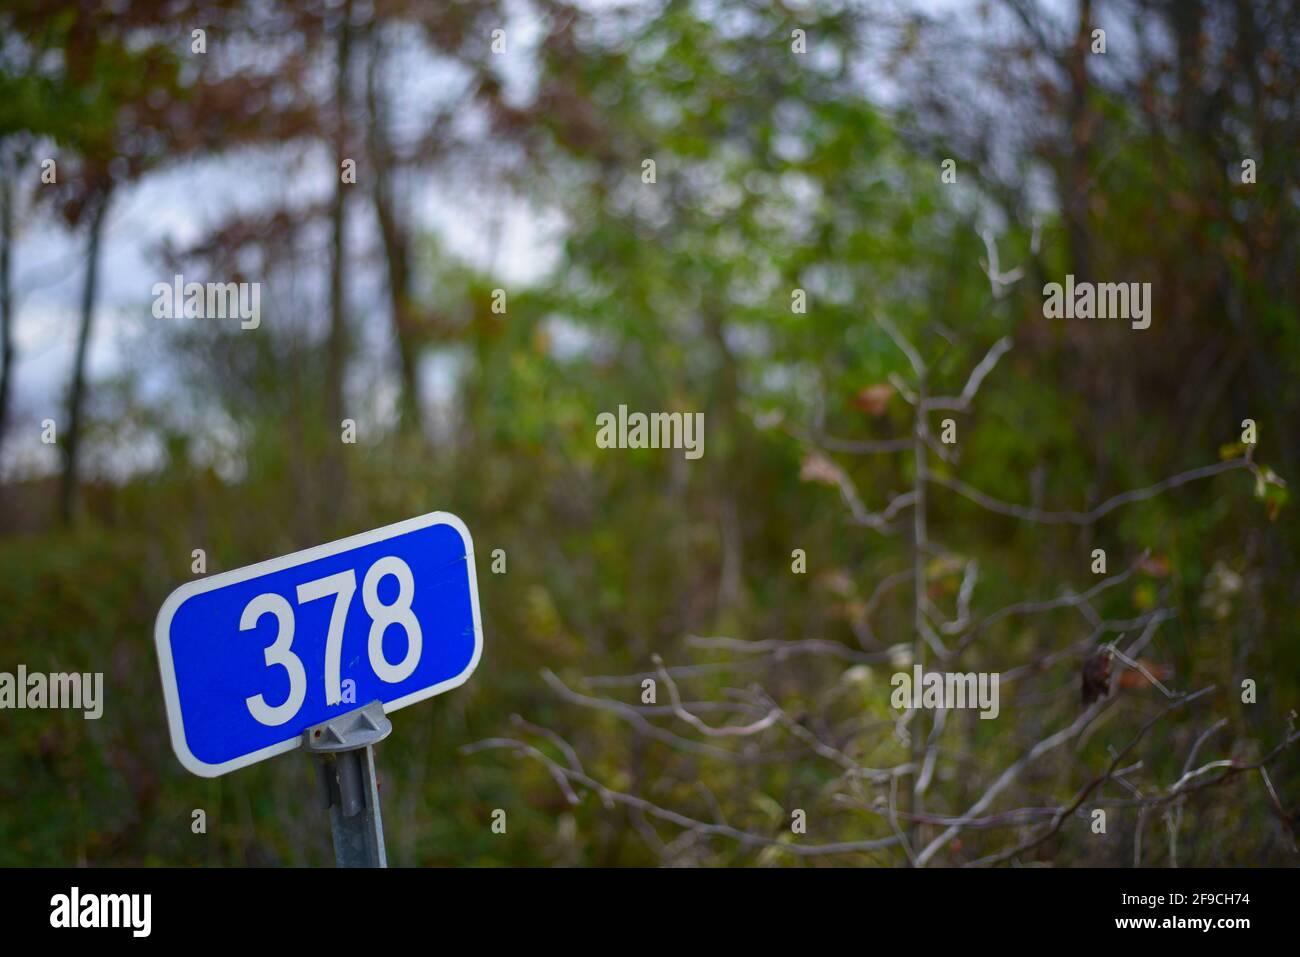 Schild mit 378 Nummer auf blauem Hintergrund Stockfoto